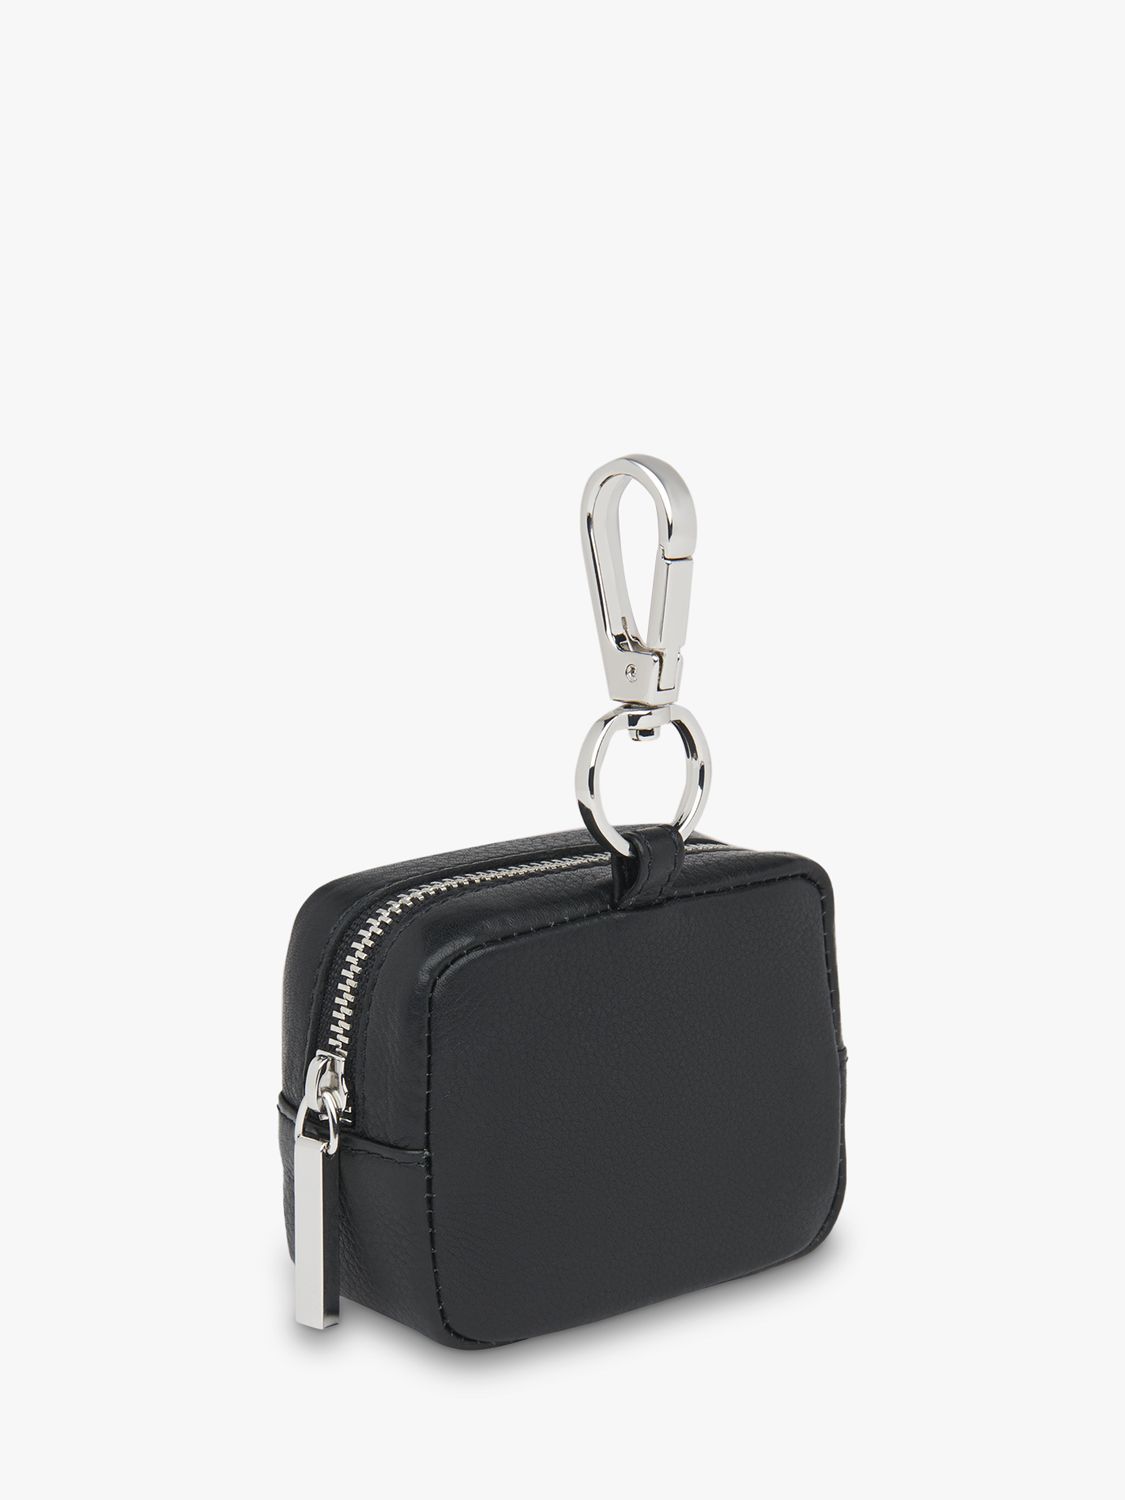 Whistles Bibi Mini Keyring Bag, Black, One Size